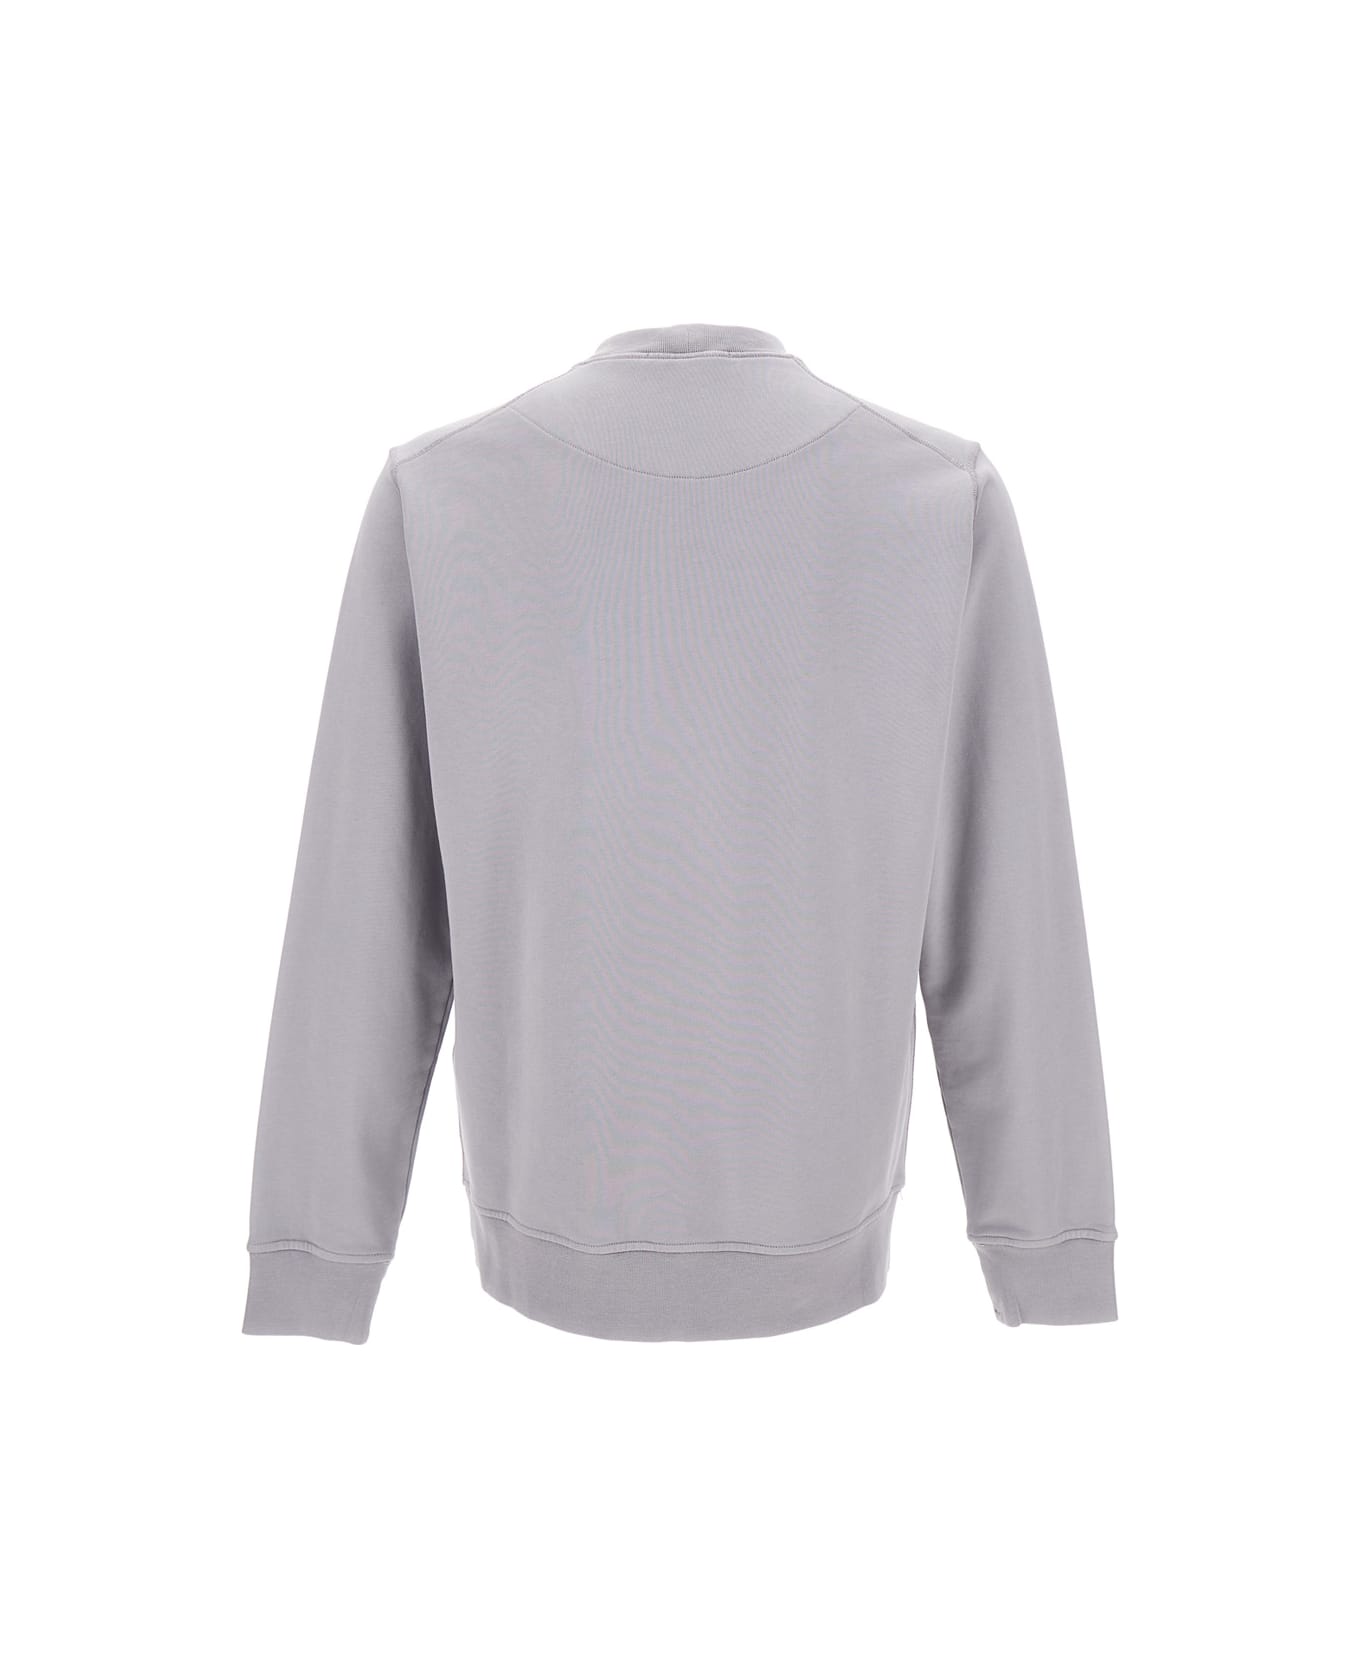 Stone Island Grey Crewneck Sweatshirt With Logo Print In Cotton Man - Grey フリース